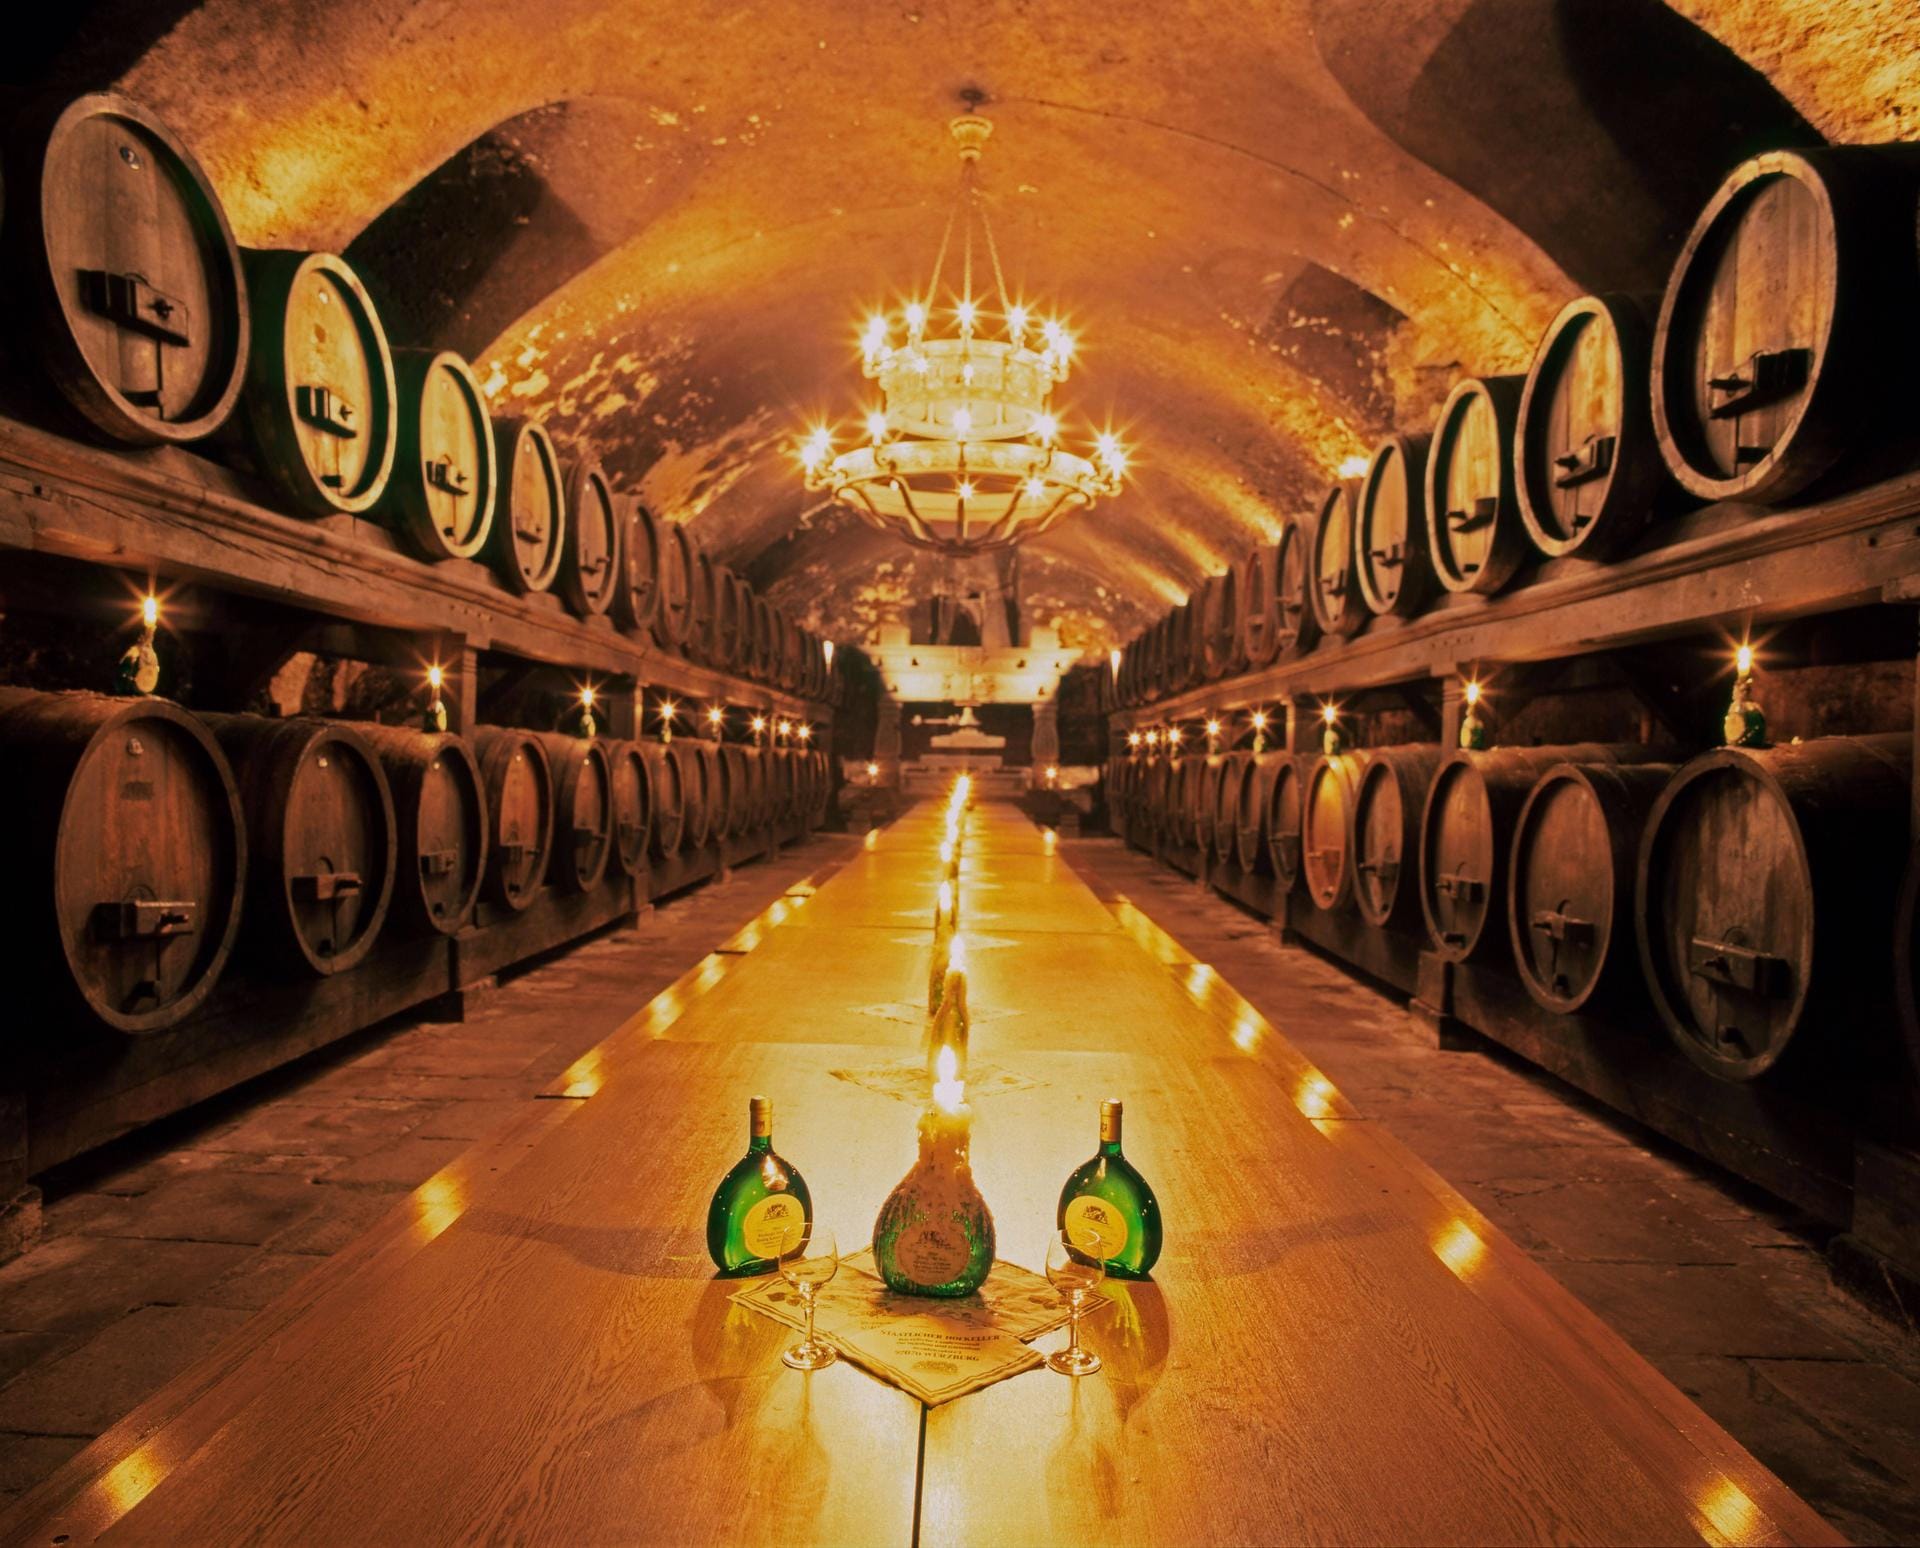 Doch auch Weintrinker kommen in Franken auf ihre Kosten. Typisch sind die in Bocksbeutelflaschen abgefüllten Weißweine.